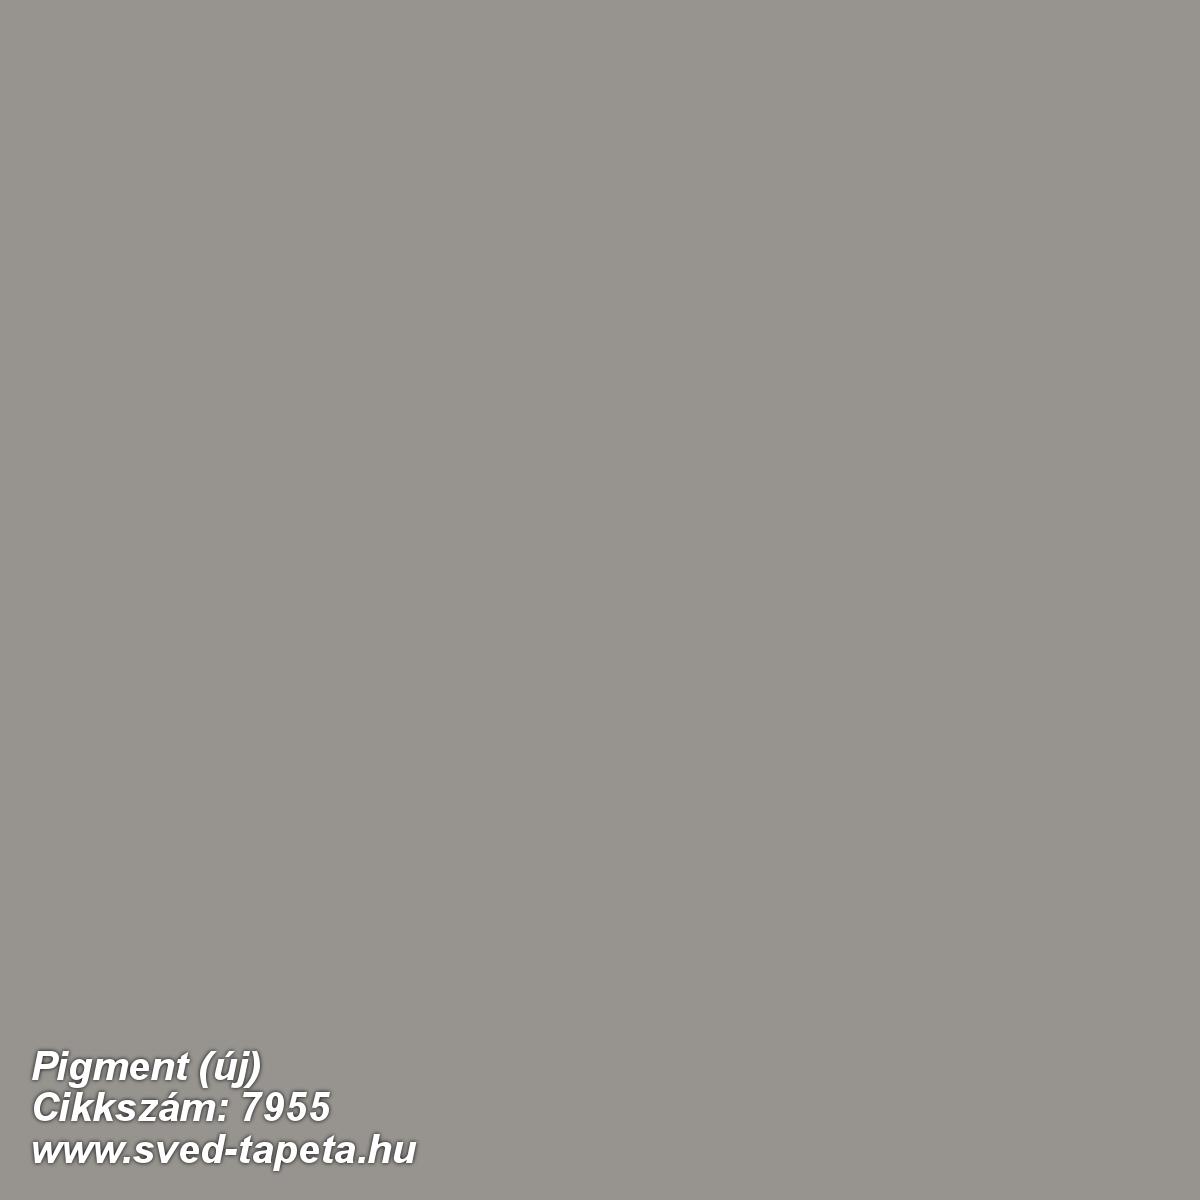 Pigment (új) 7955 cikkszámú svéd Borasgyártmányú designtapéta